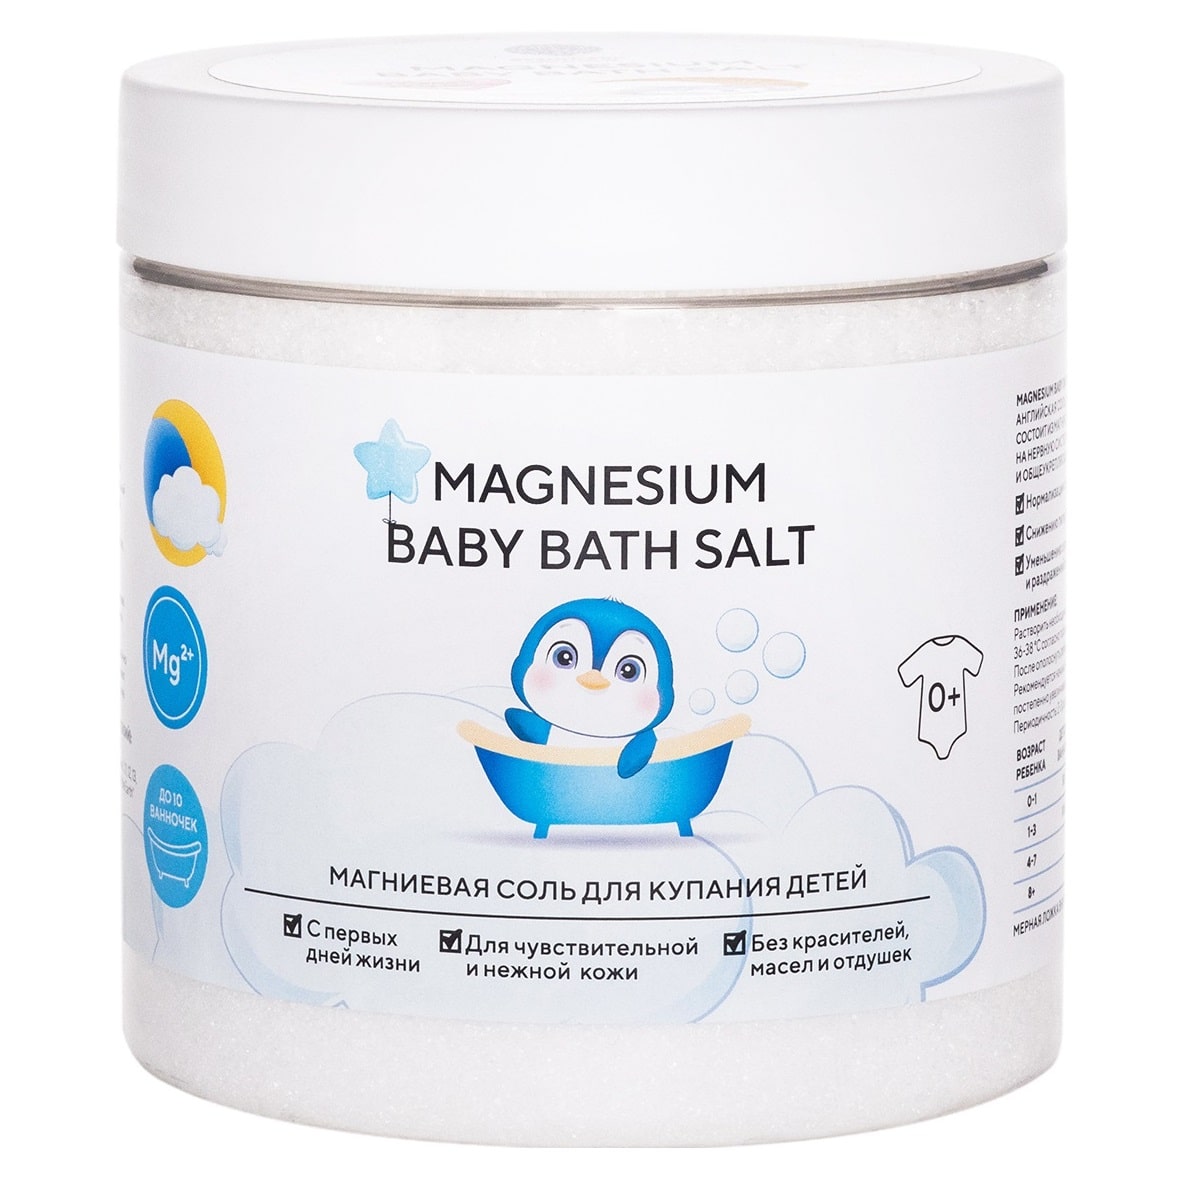 магниевая соль для купания детей epsom pro magnesium baby 500 гр Epsom.pro Магниевая соль для купания детей 0+ Magnesium Baby Bath Salt, 500 г (Epsom.pro, Для ванны)